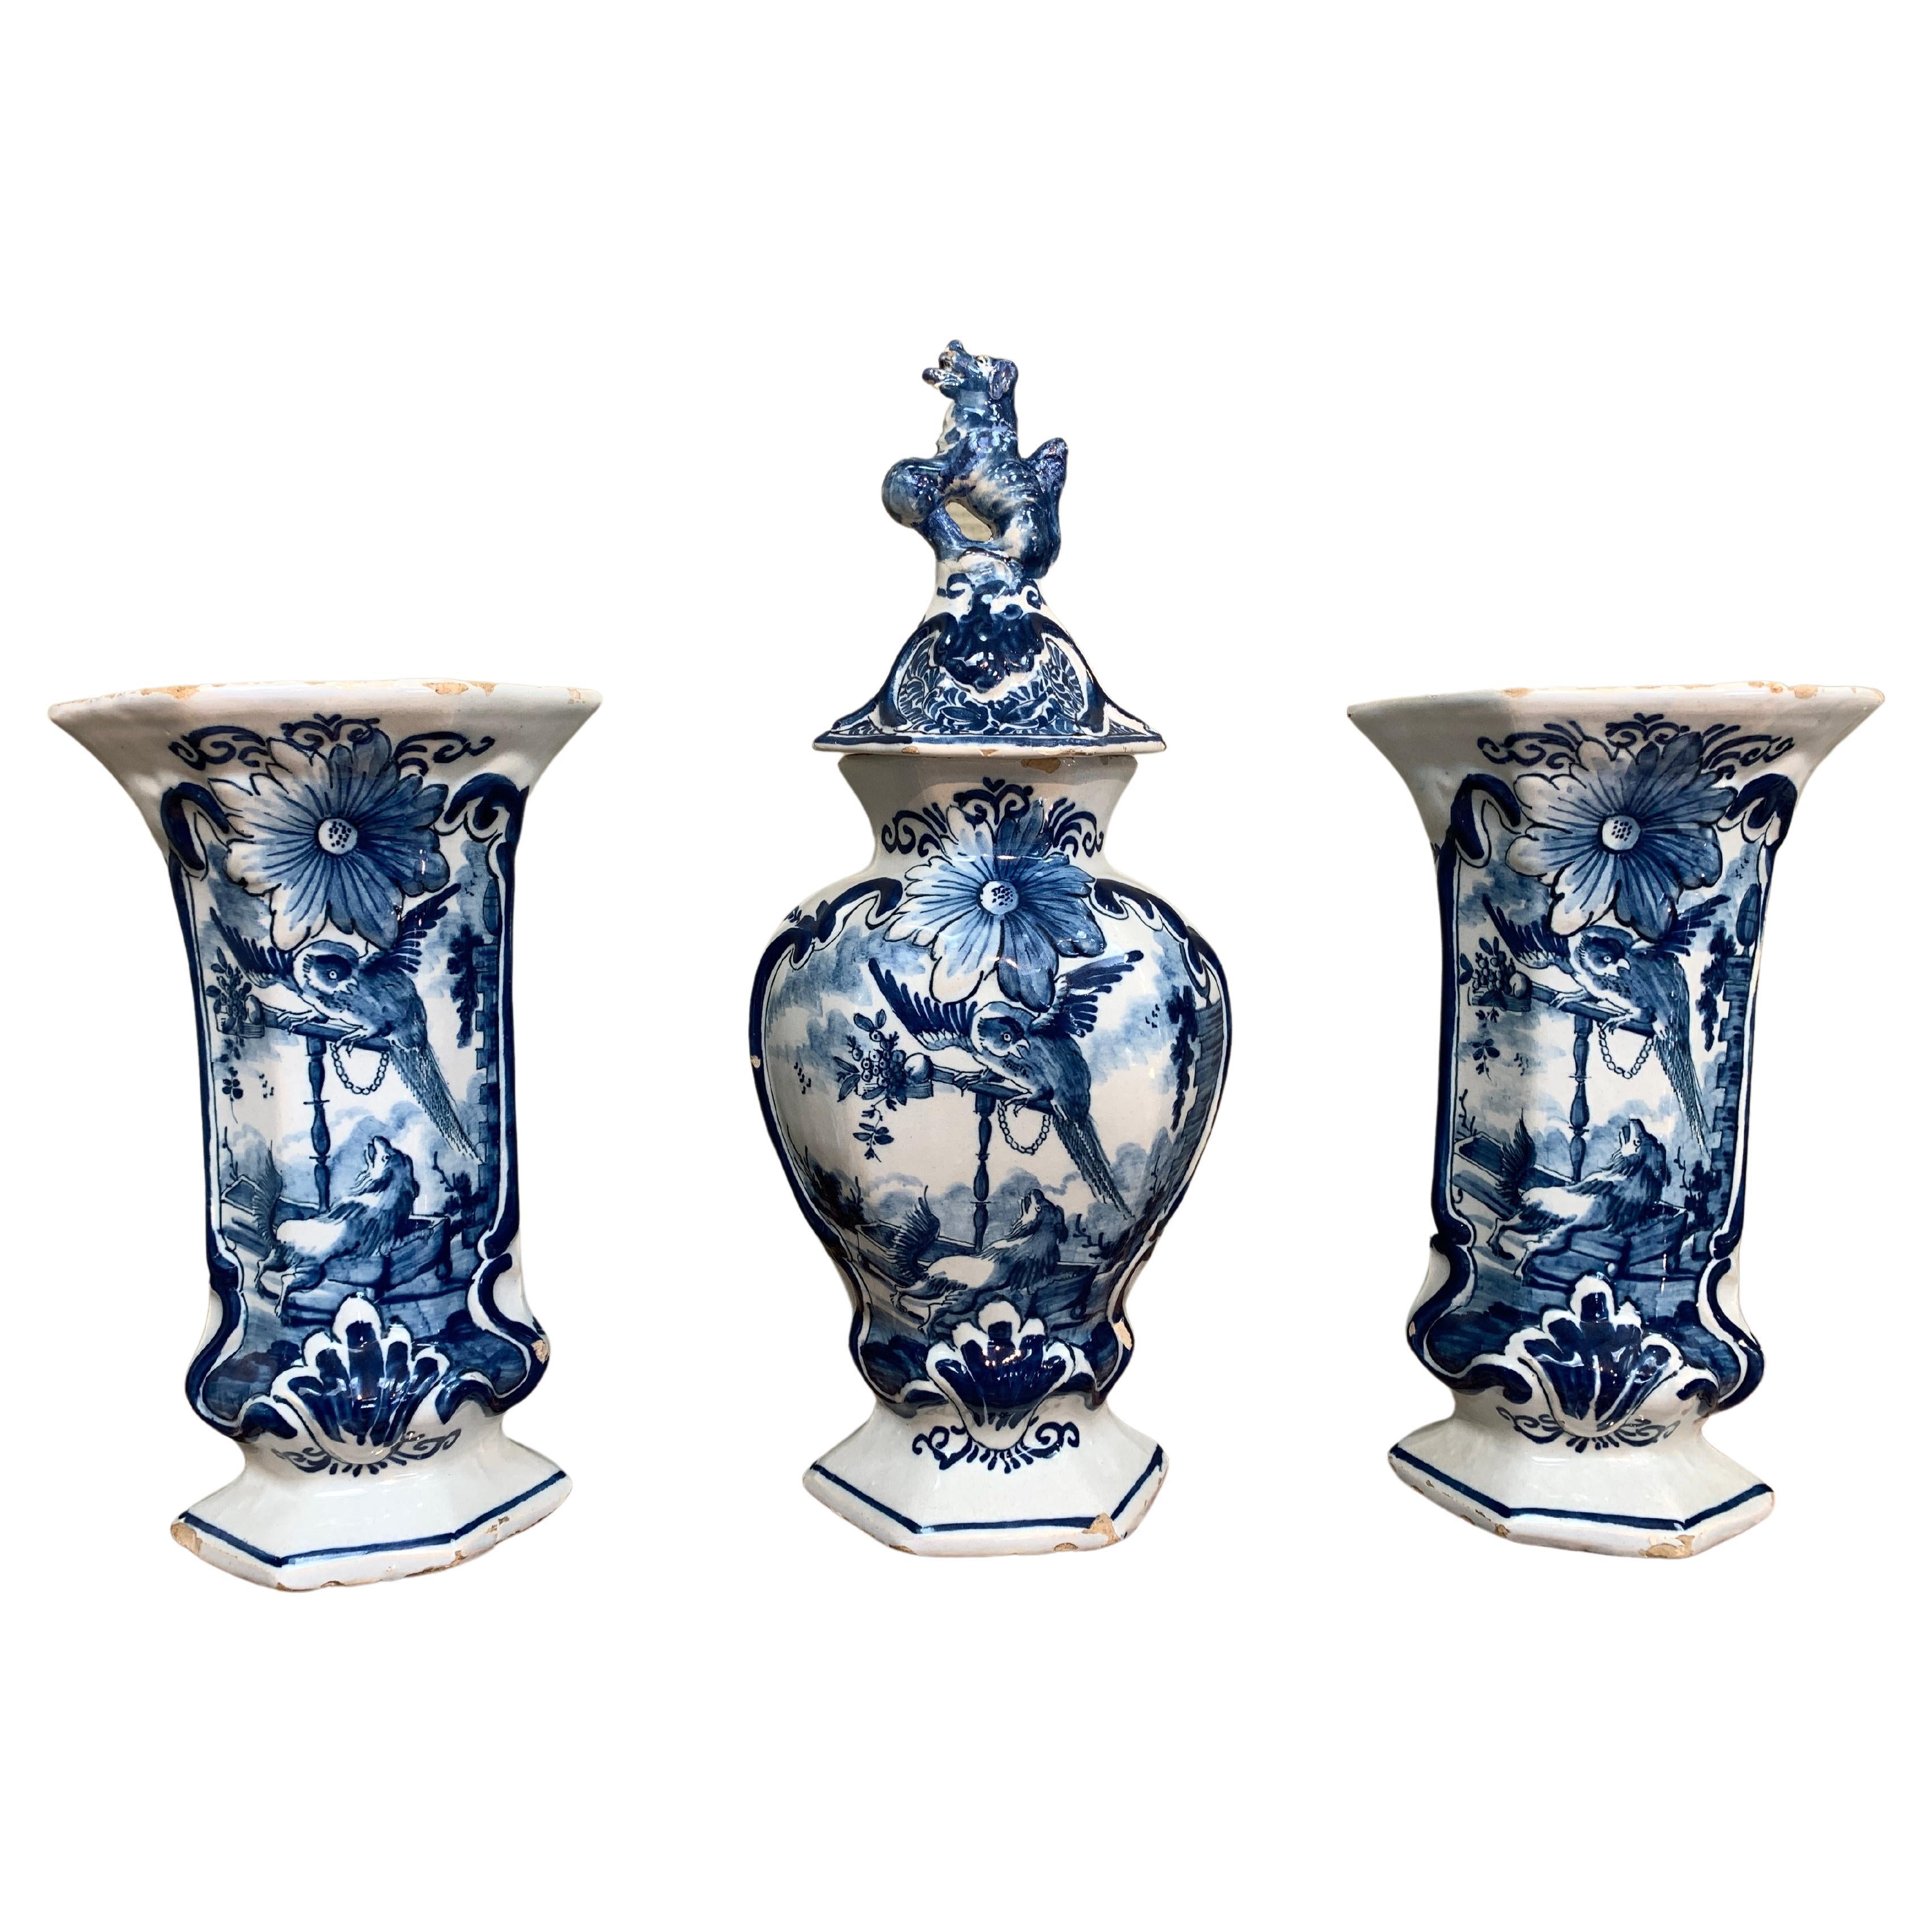 Garniture hollandaise de Delft trois pièces avec chien et perroquet, ensemble de vases, 18ème siècle